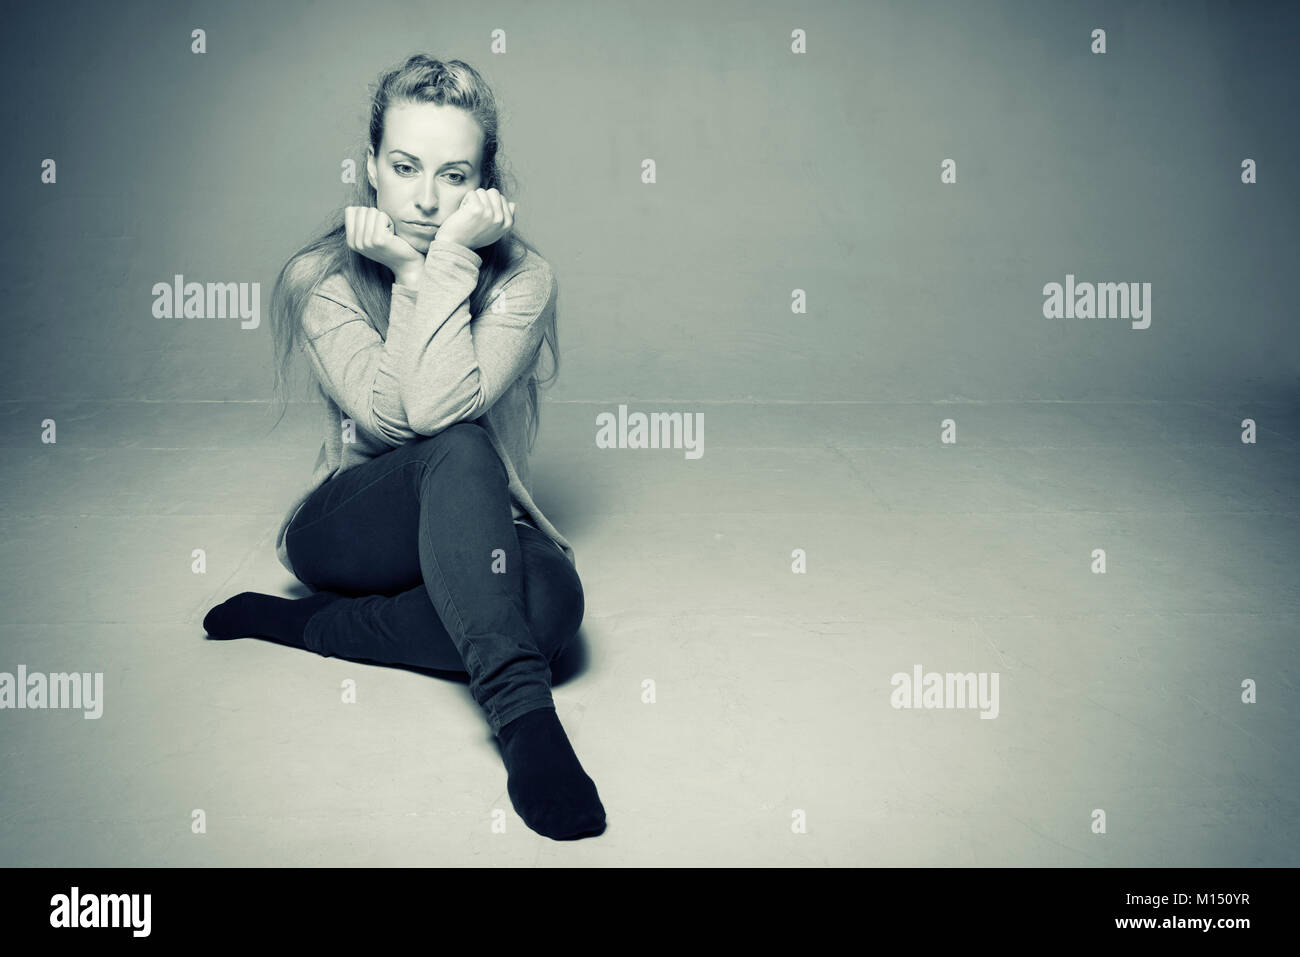 Traurige Frau im leeren zimmer sitzen auf dem Boden Ellenbogen ruhend auf gebogenem Knie Gesicht zwischen geballten Hände traurig und entfernten getonten Bild gedrückt Stockfoto